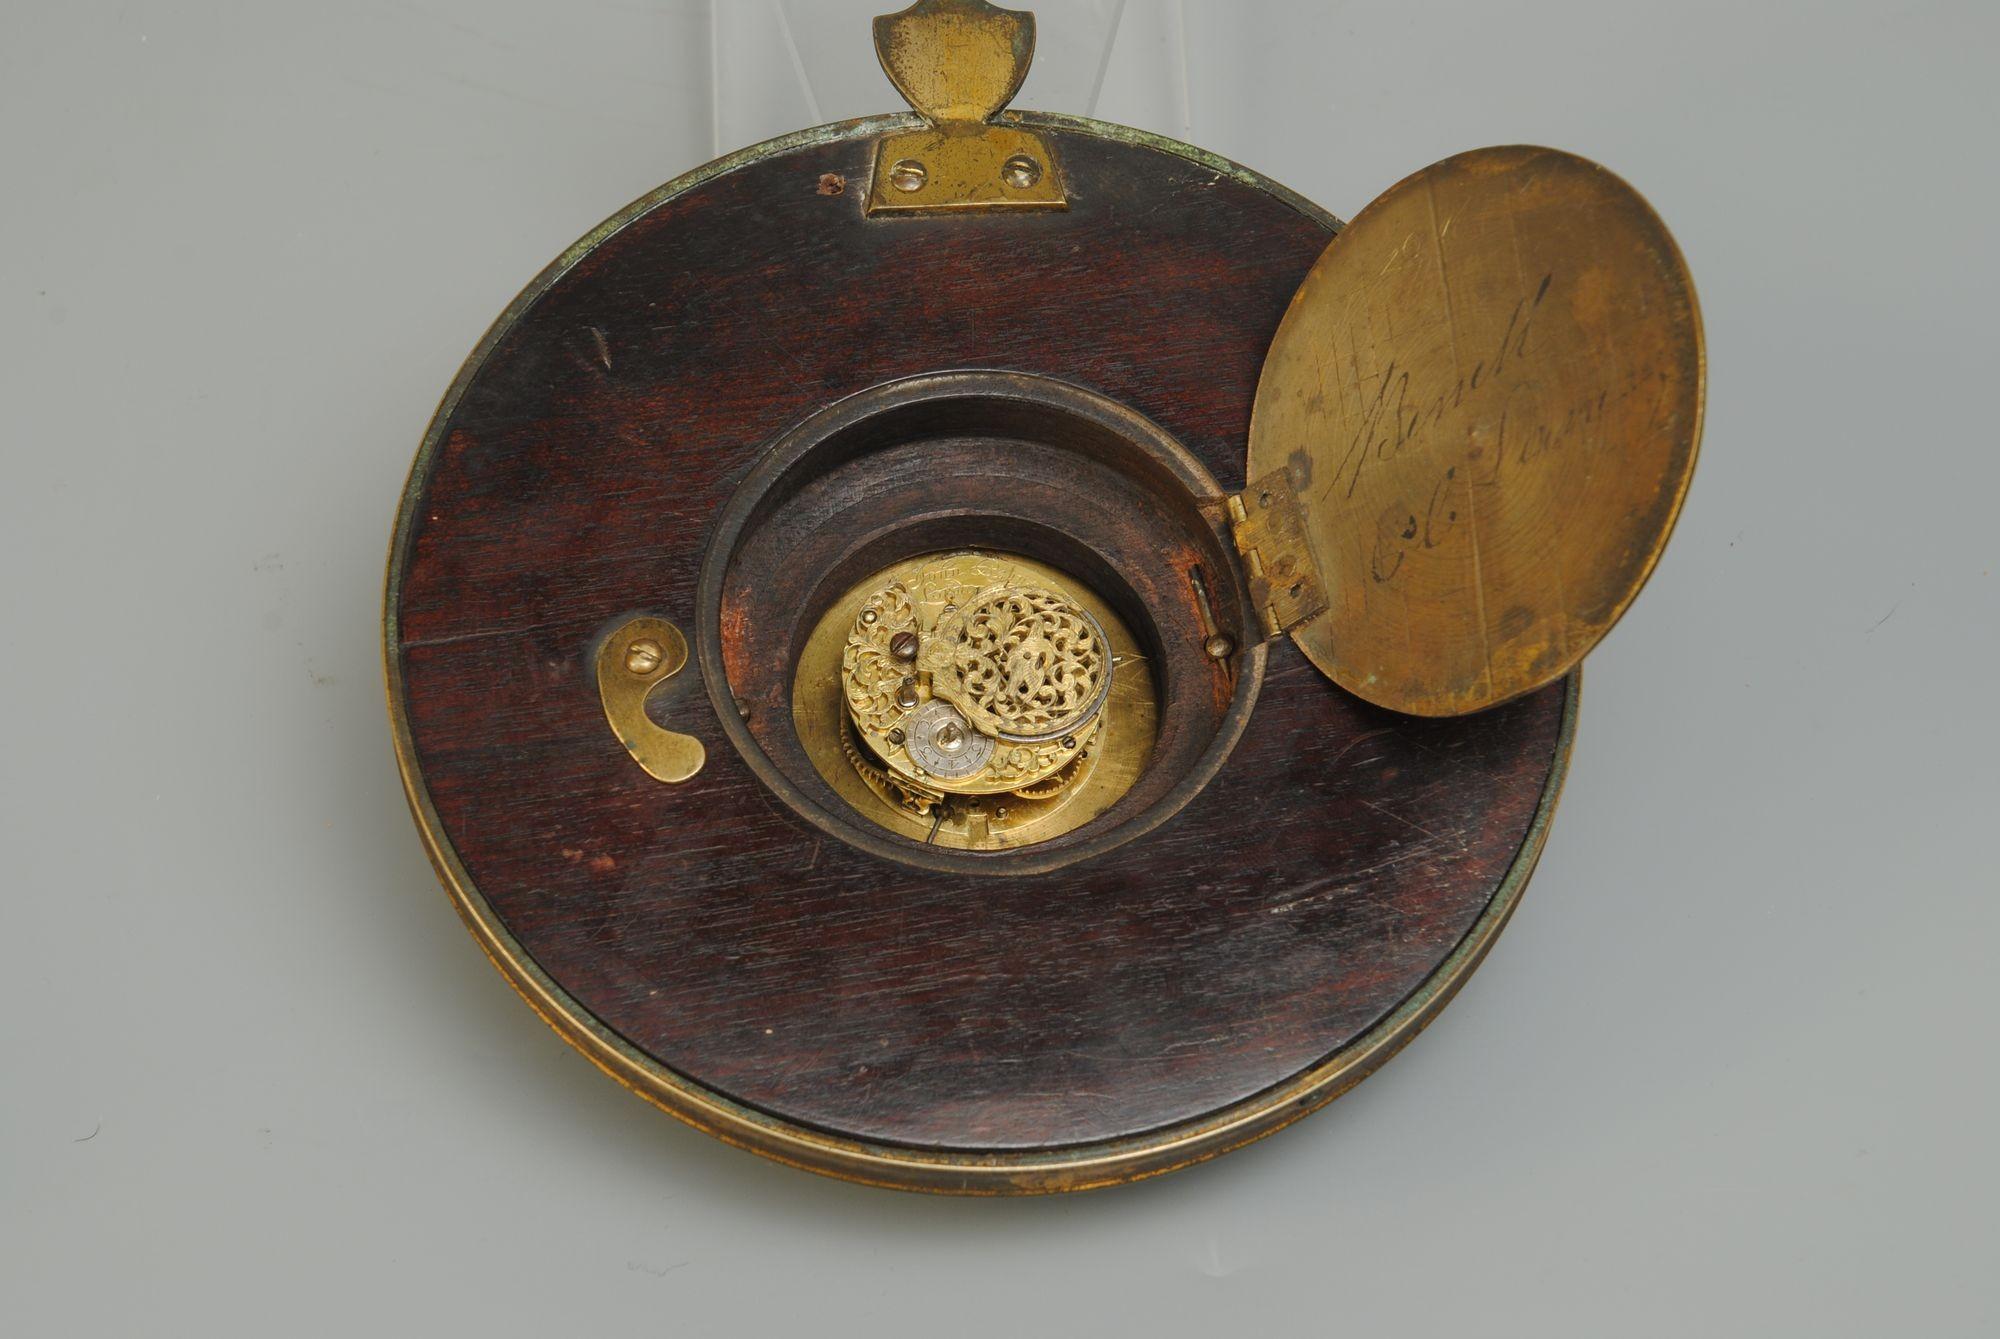 Pendule en bois ébonisé et laiton du début du 19e siècle, avec cadran émaillé et mouvement d'horlogerie de fabrication londonienne
Ces horloges étaient utilisées dans les carrosses